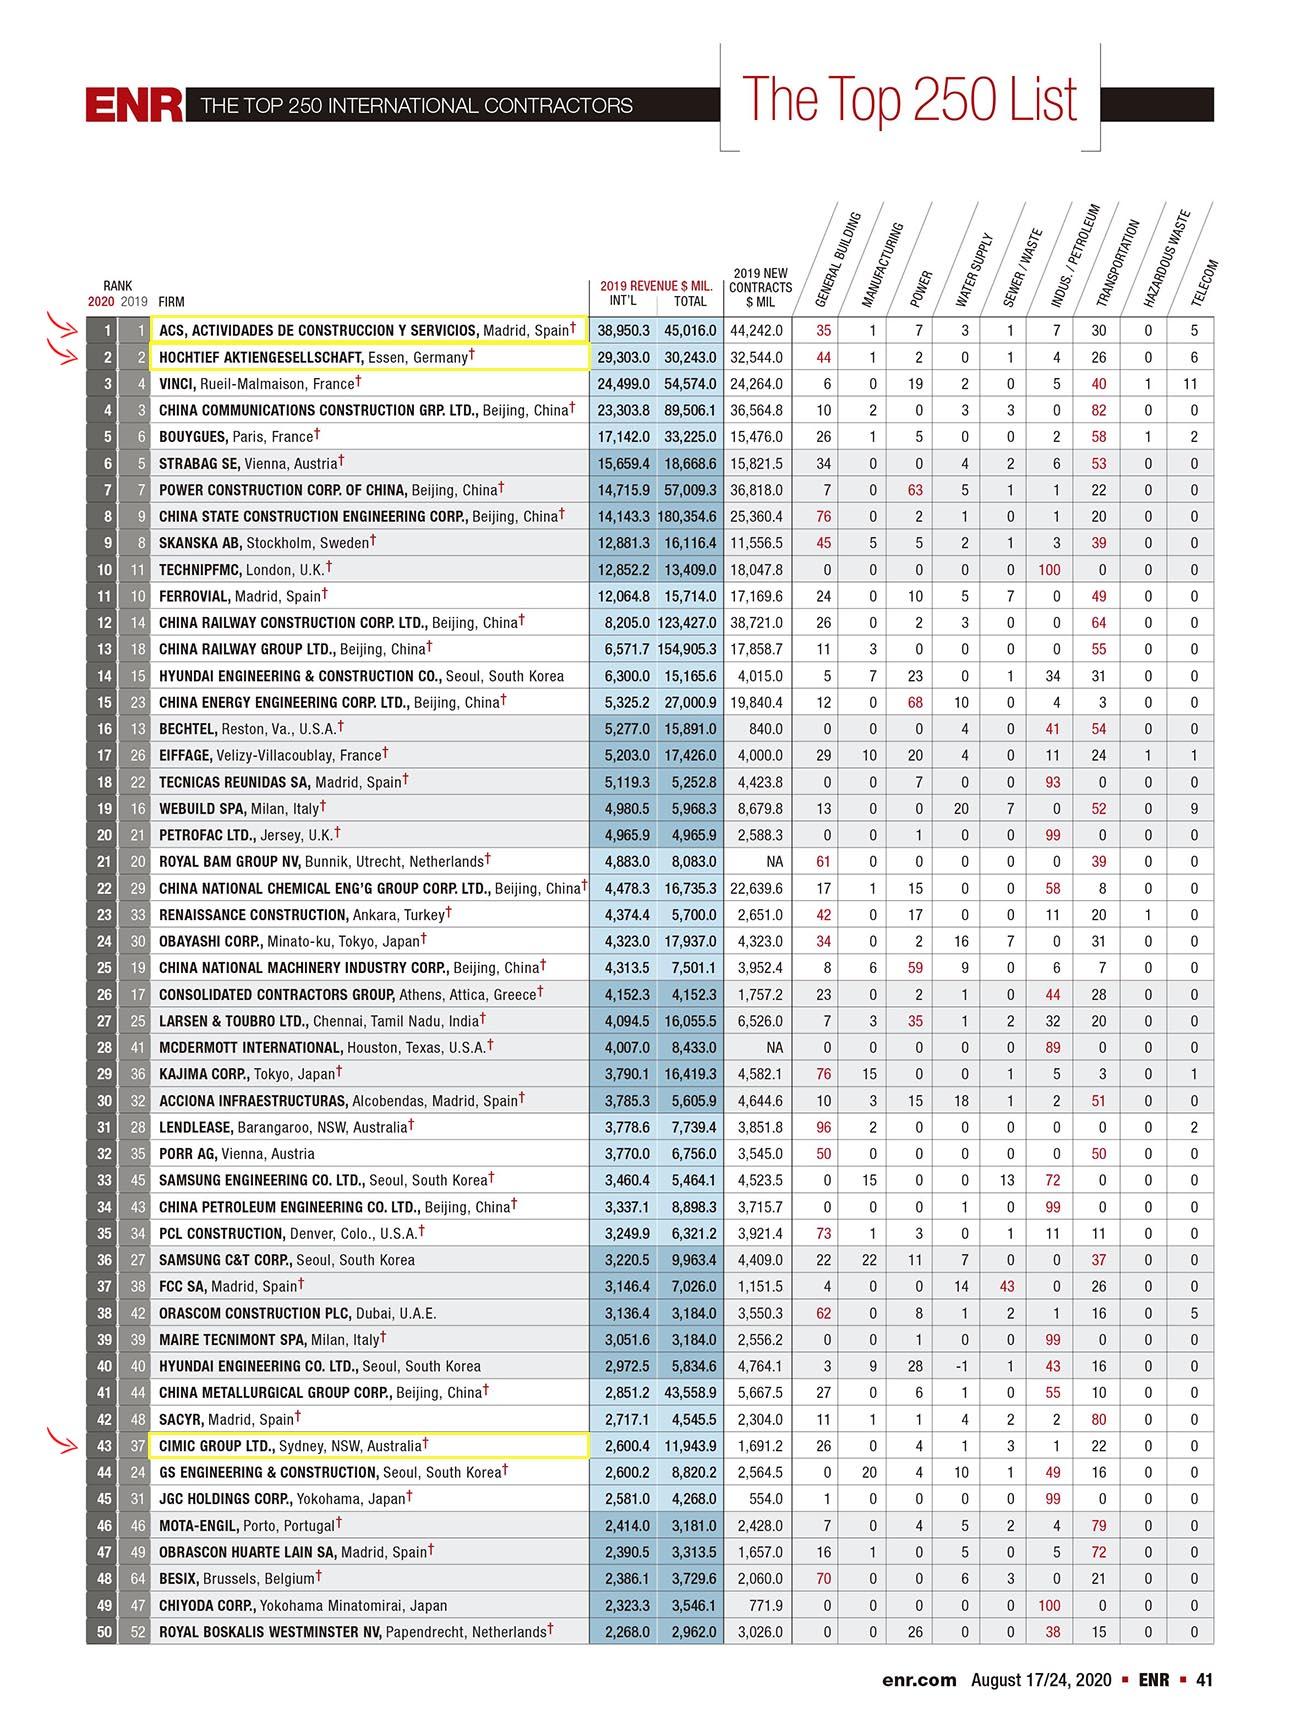 La lista de las primeras 50 constructoras internacionales deL TOP250 de ENER